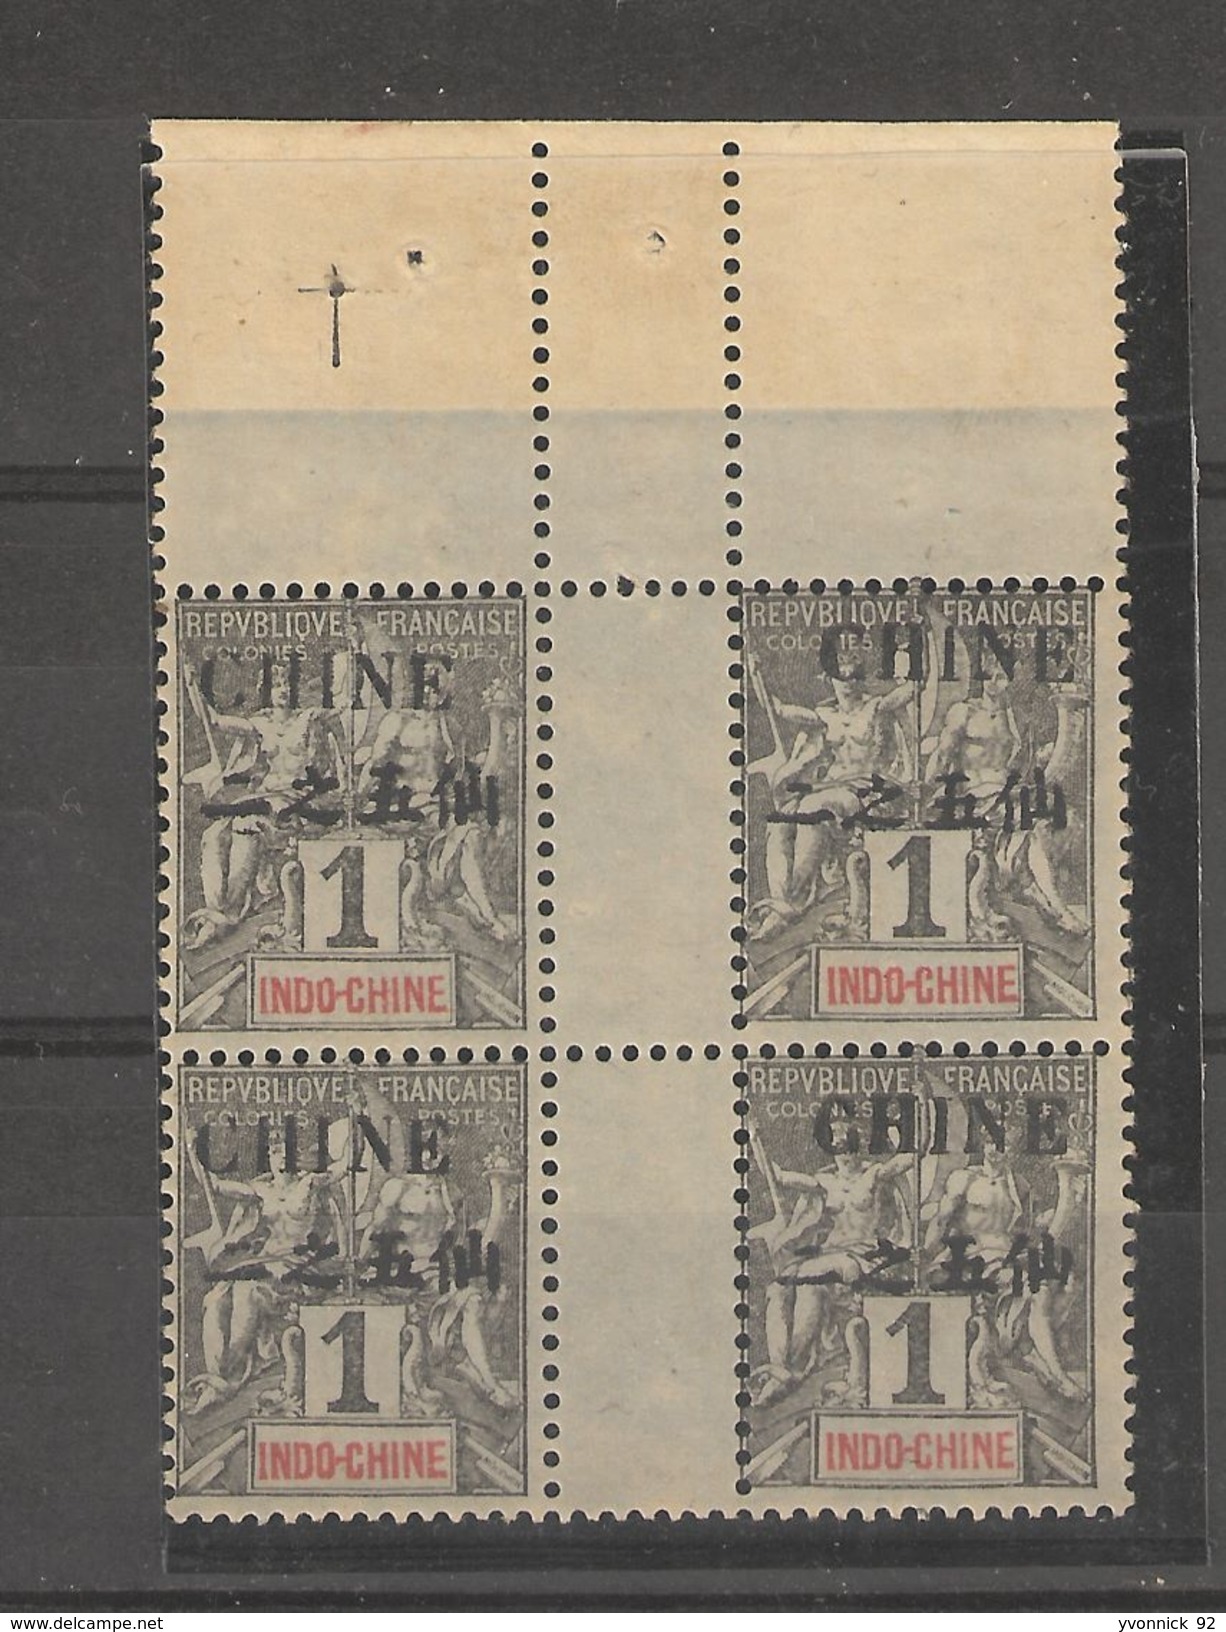 Chine - Bur.Indochinois _ Bloc De 4 Timb.sans Millesimes  1c Surchargé  En 2 Langues(1902) N°1 - Nuovi